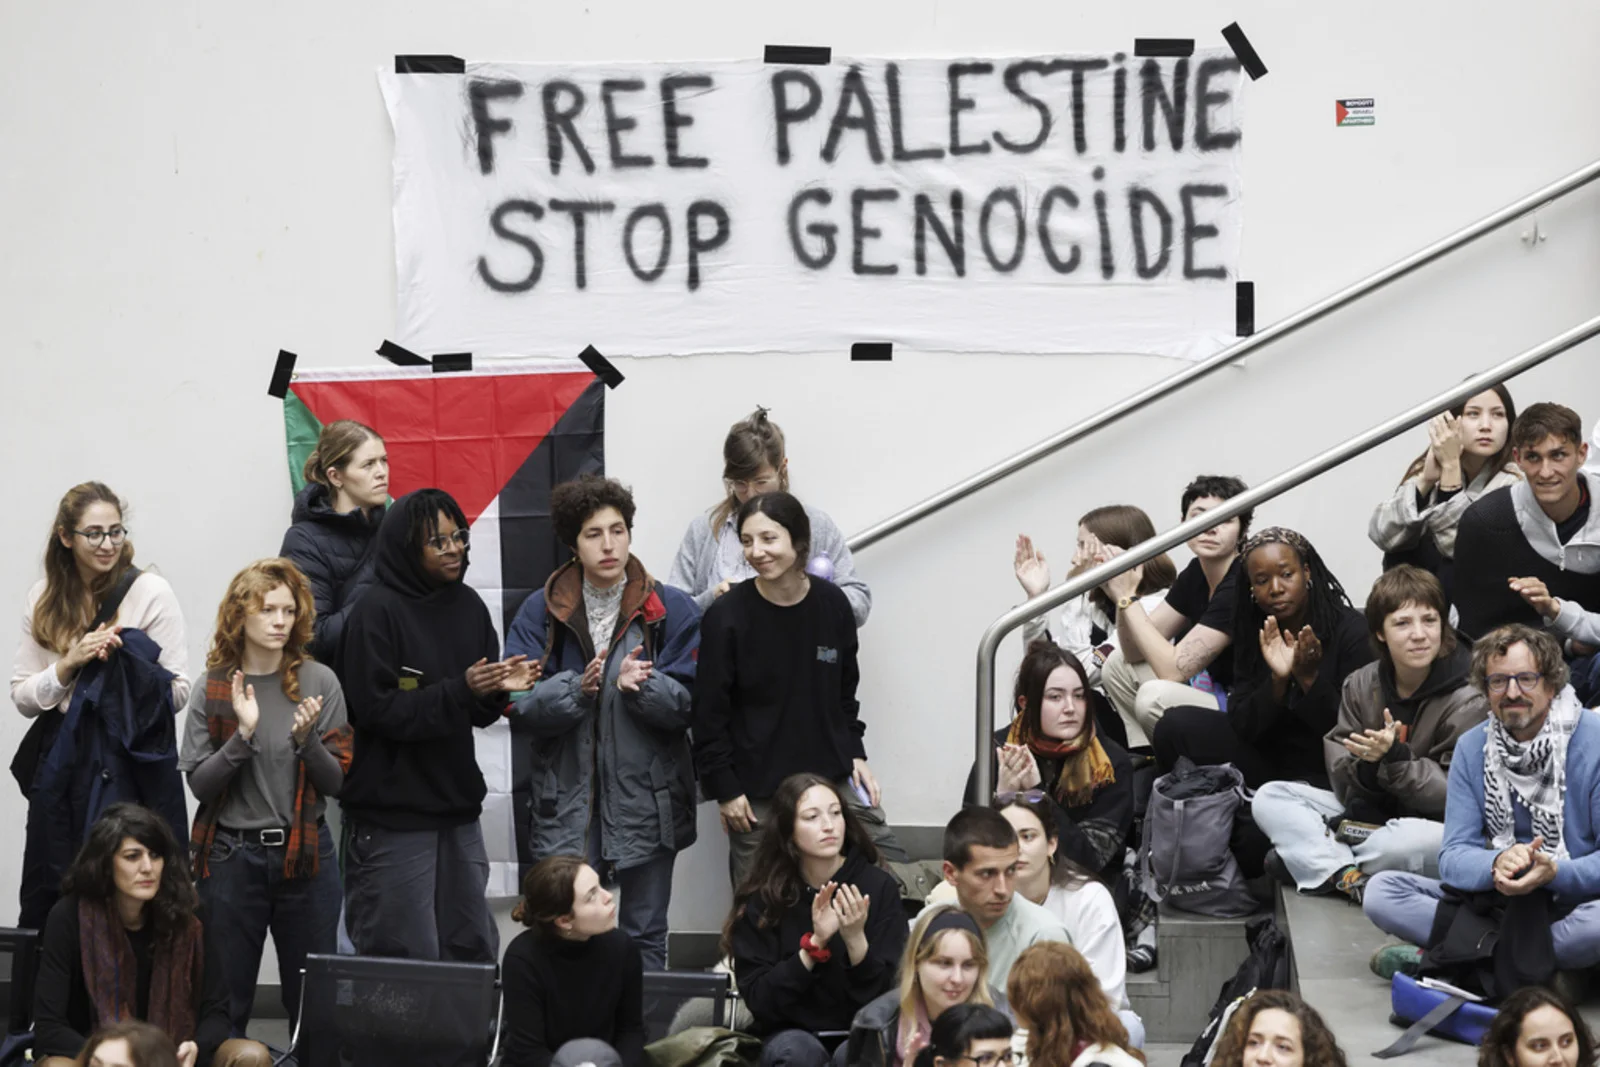 ورود پلیس برای متفرق کردن دانشجویان حامی فلسطین در دانشگاه ژنو